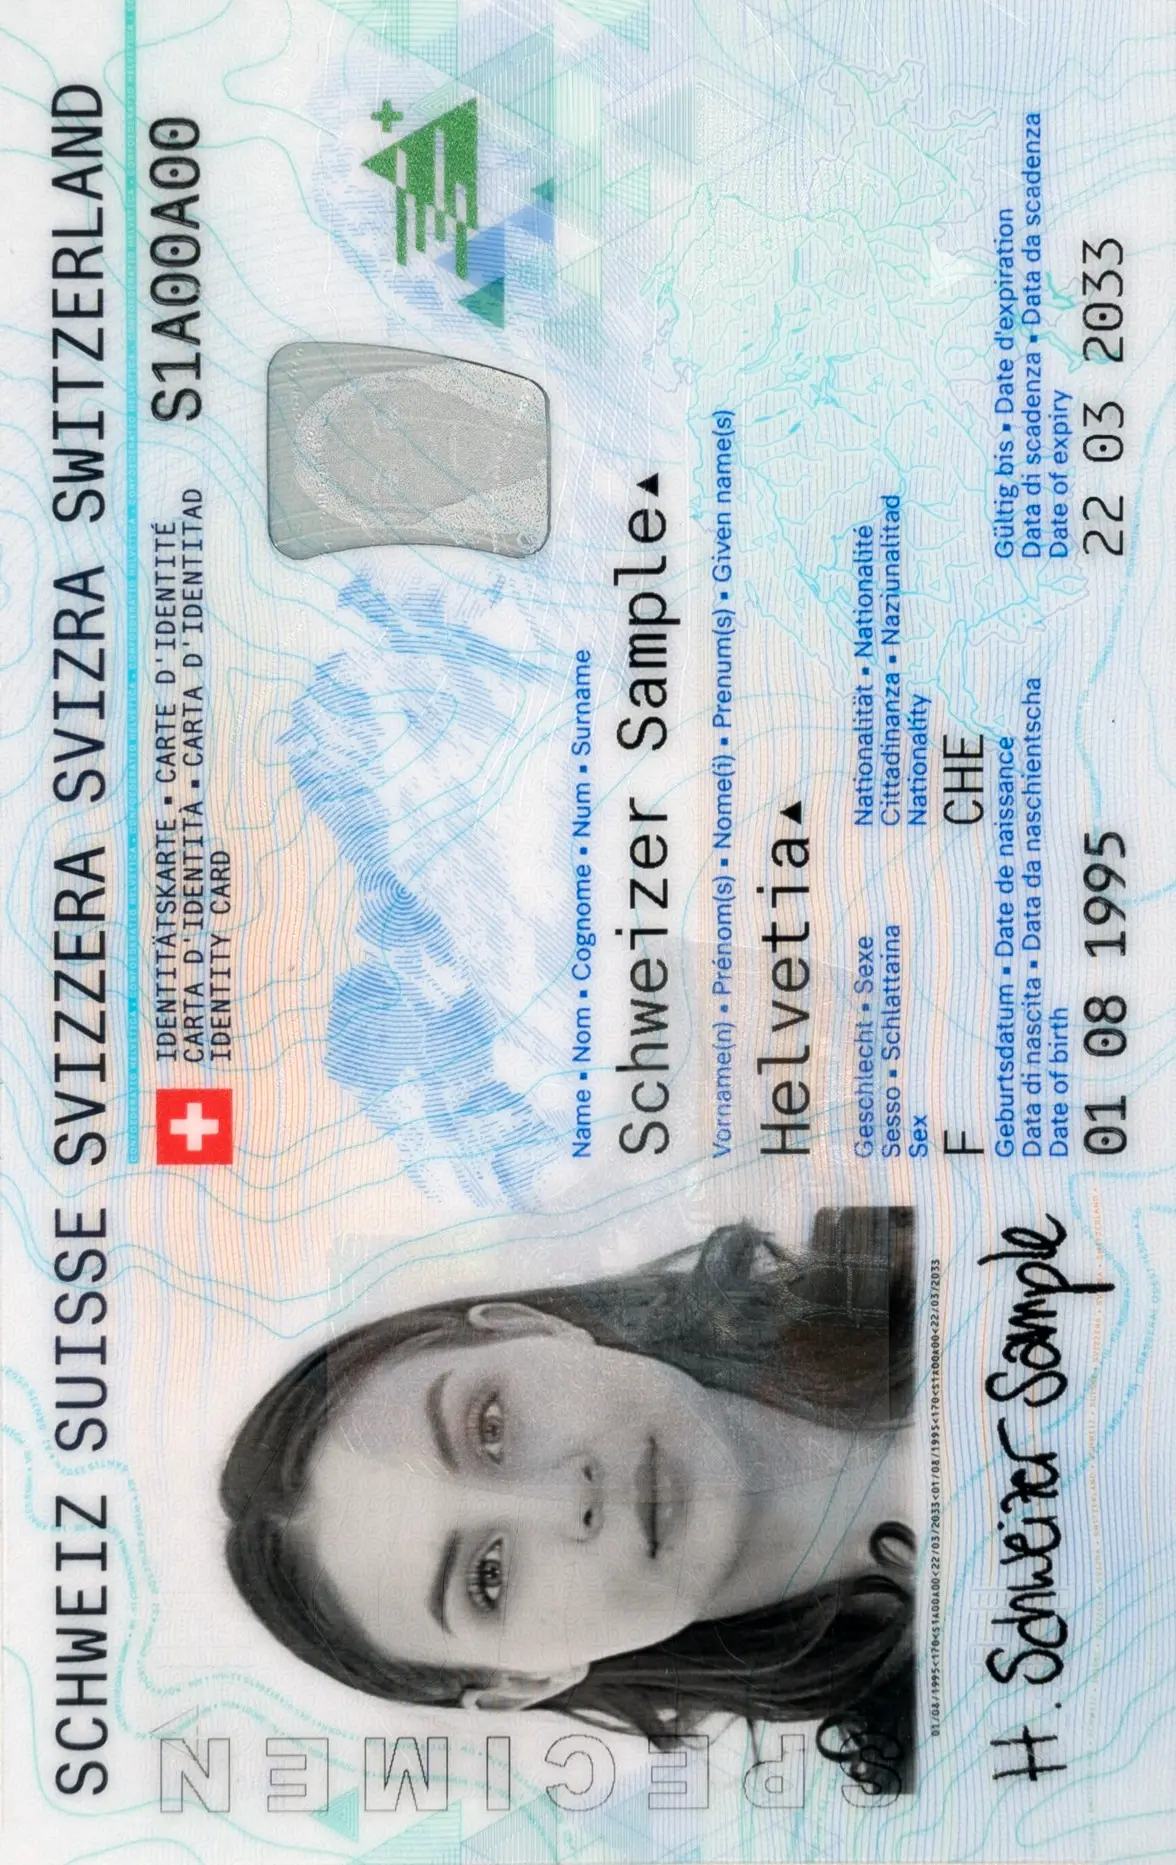 Foto für die Schweizer Identitätskarte